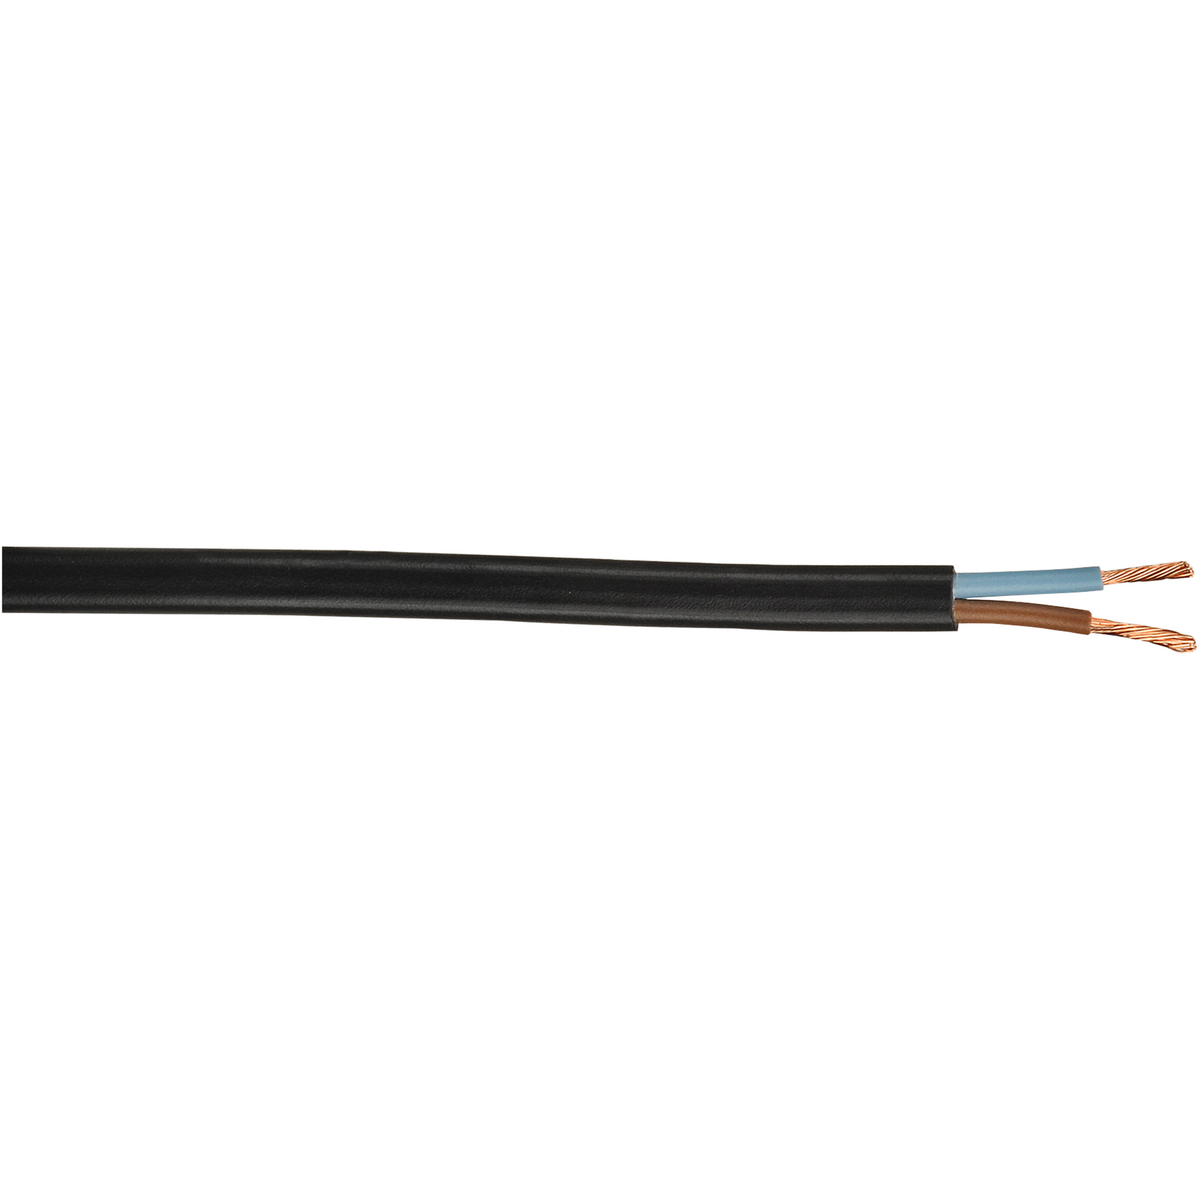 CENTRALE BRICO Câble électrique 2 X 0.75 mm² h03vvh2-f L.15 m, noir.